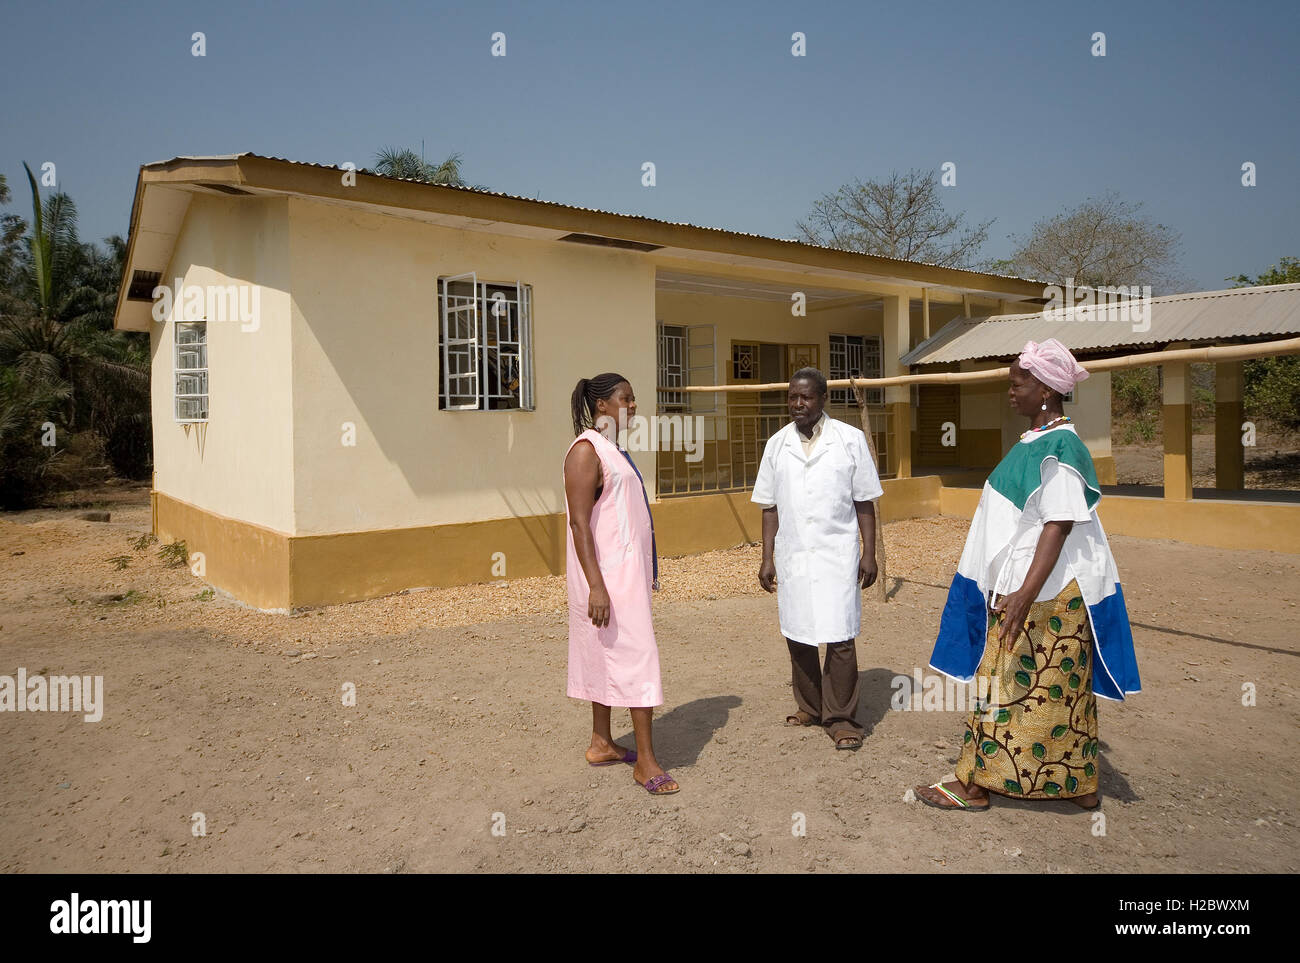 El personal médico de la clínica de salud fuera uno de varios proyectos financiados por la comunidad de la aldea de mineral de hierro en el distrito de Tonkolili, empresa, norte de Sierra Leona Foto de stock